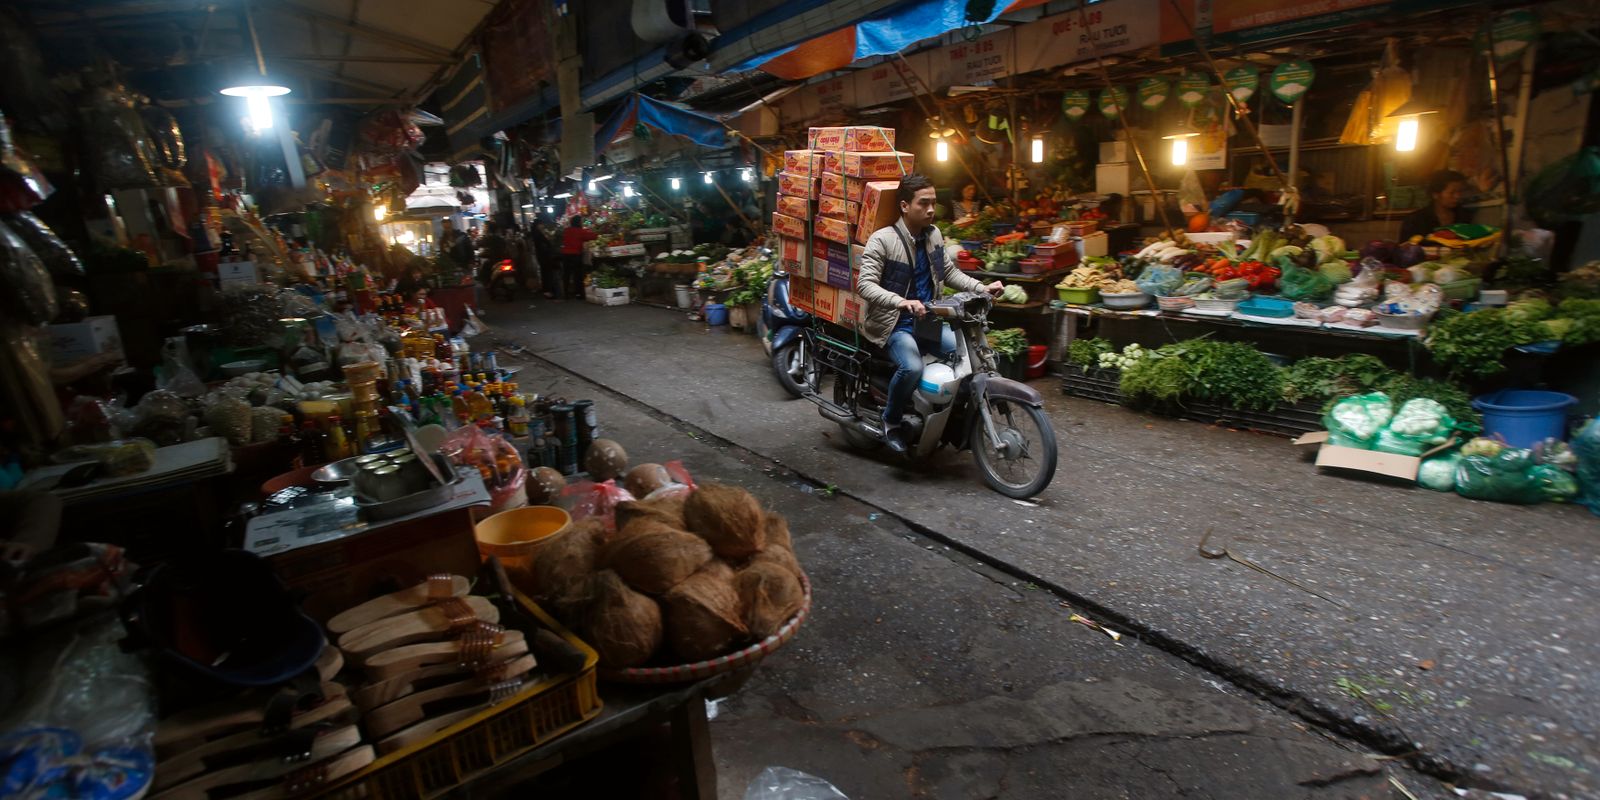 nudelförsäljare fängslas i vietnam efter viral video